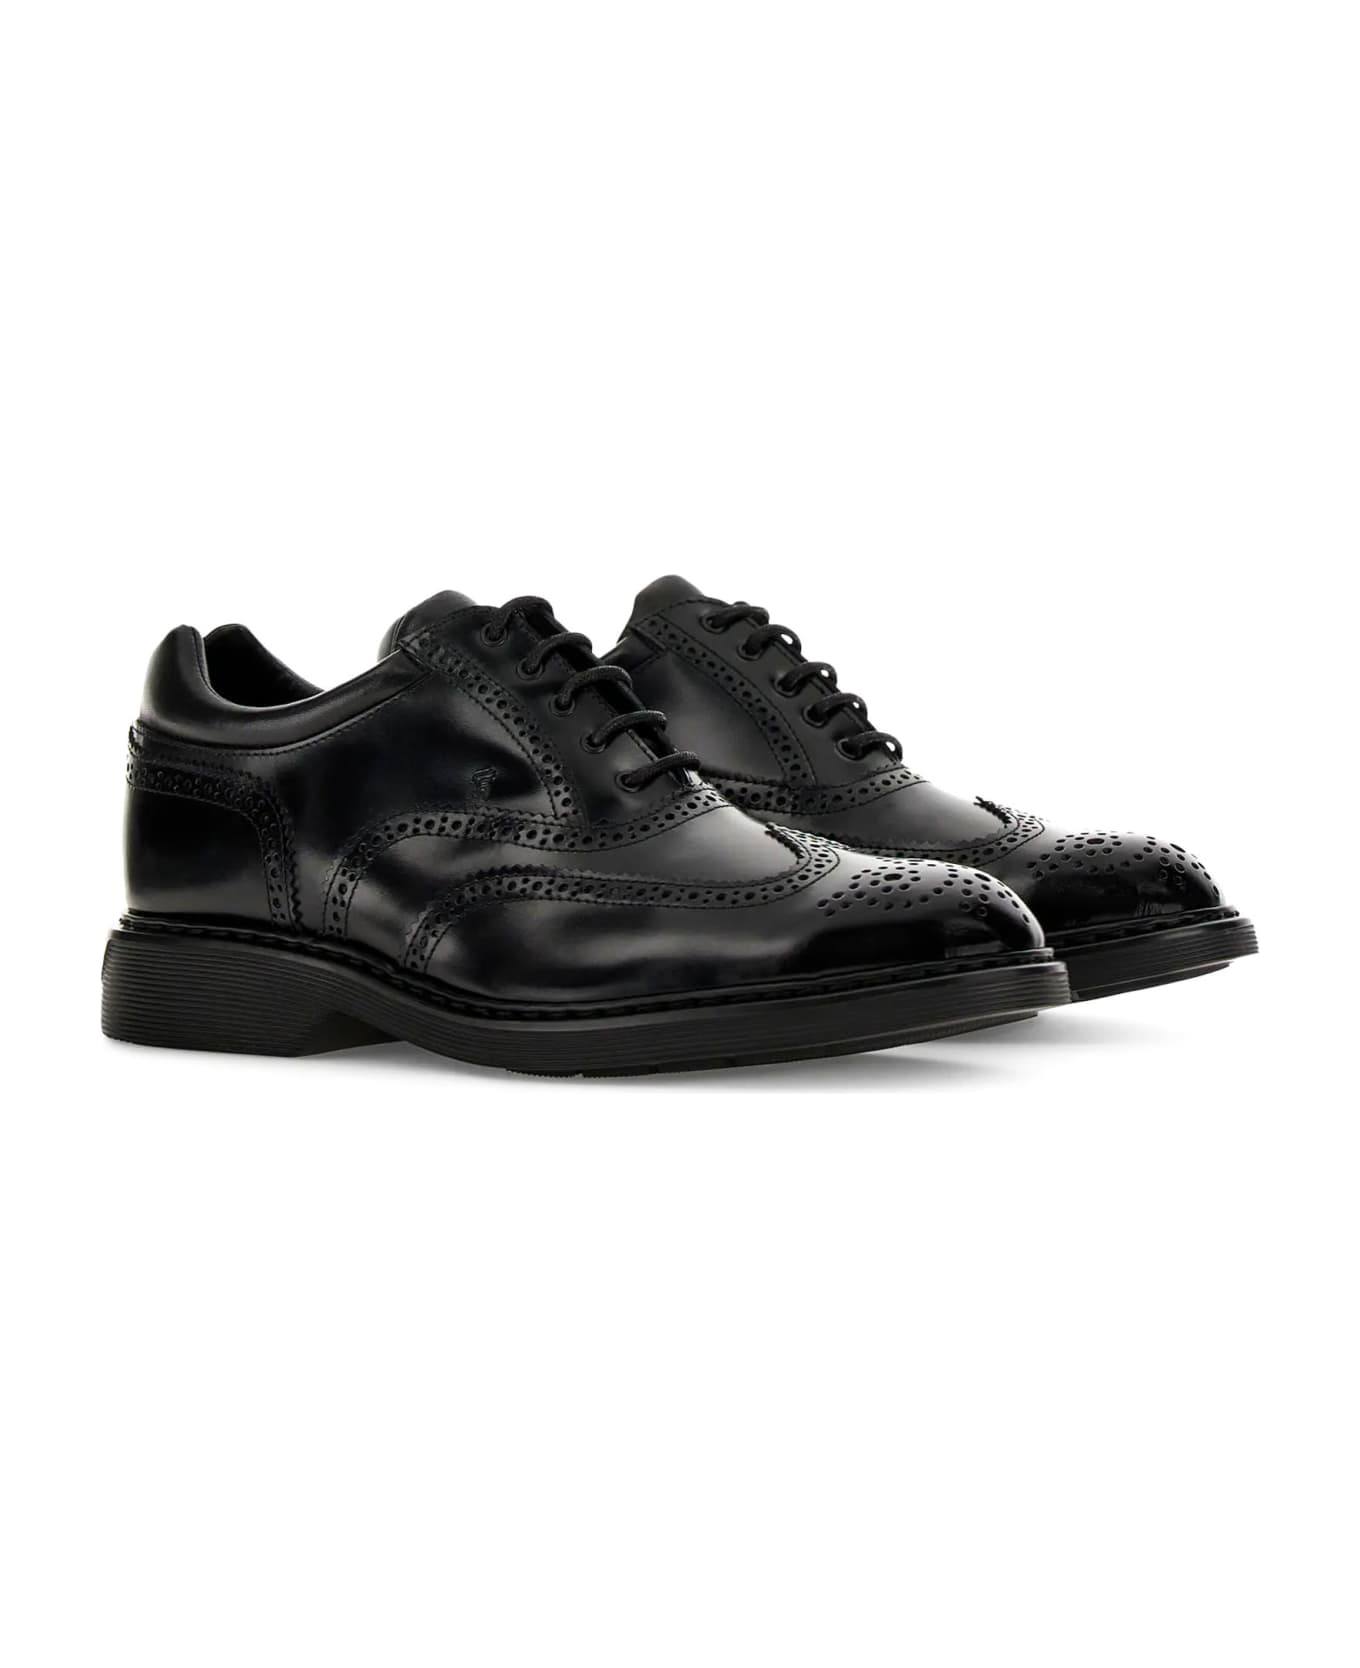 Hogan H576 Leather Lace-up Shoes - black